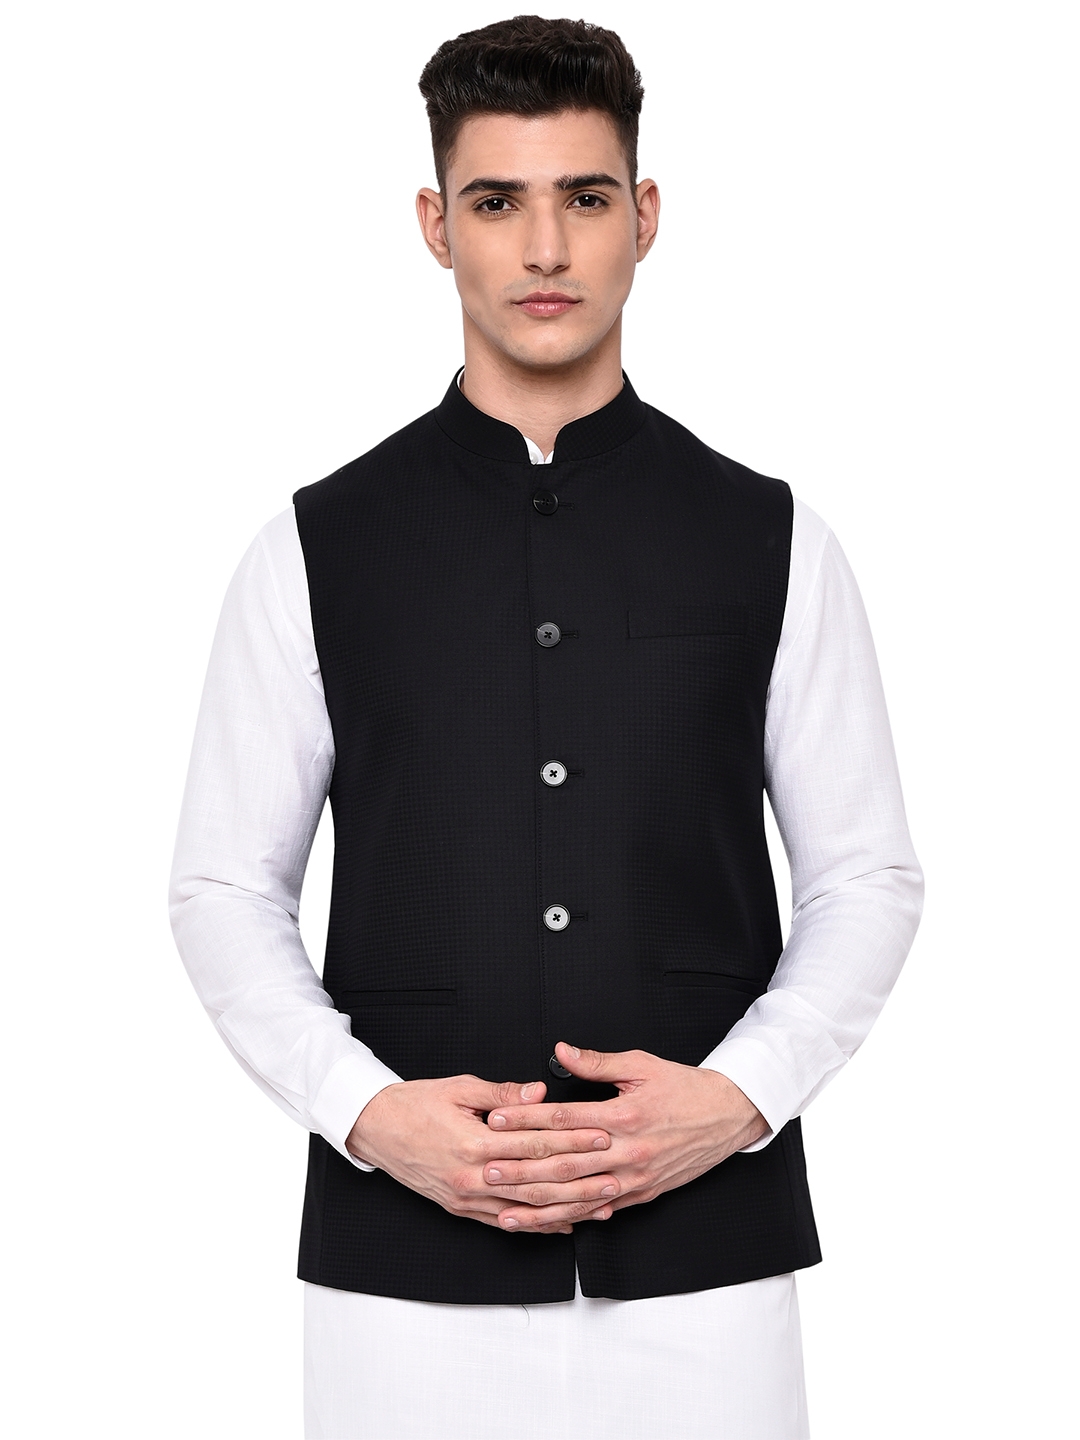 Modi Jacket | Black Checked Ethnic Jacket (MJK168-BLACK CHECKS)